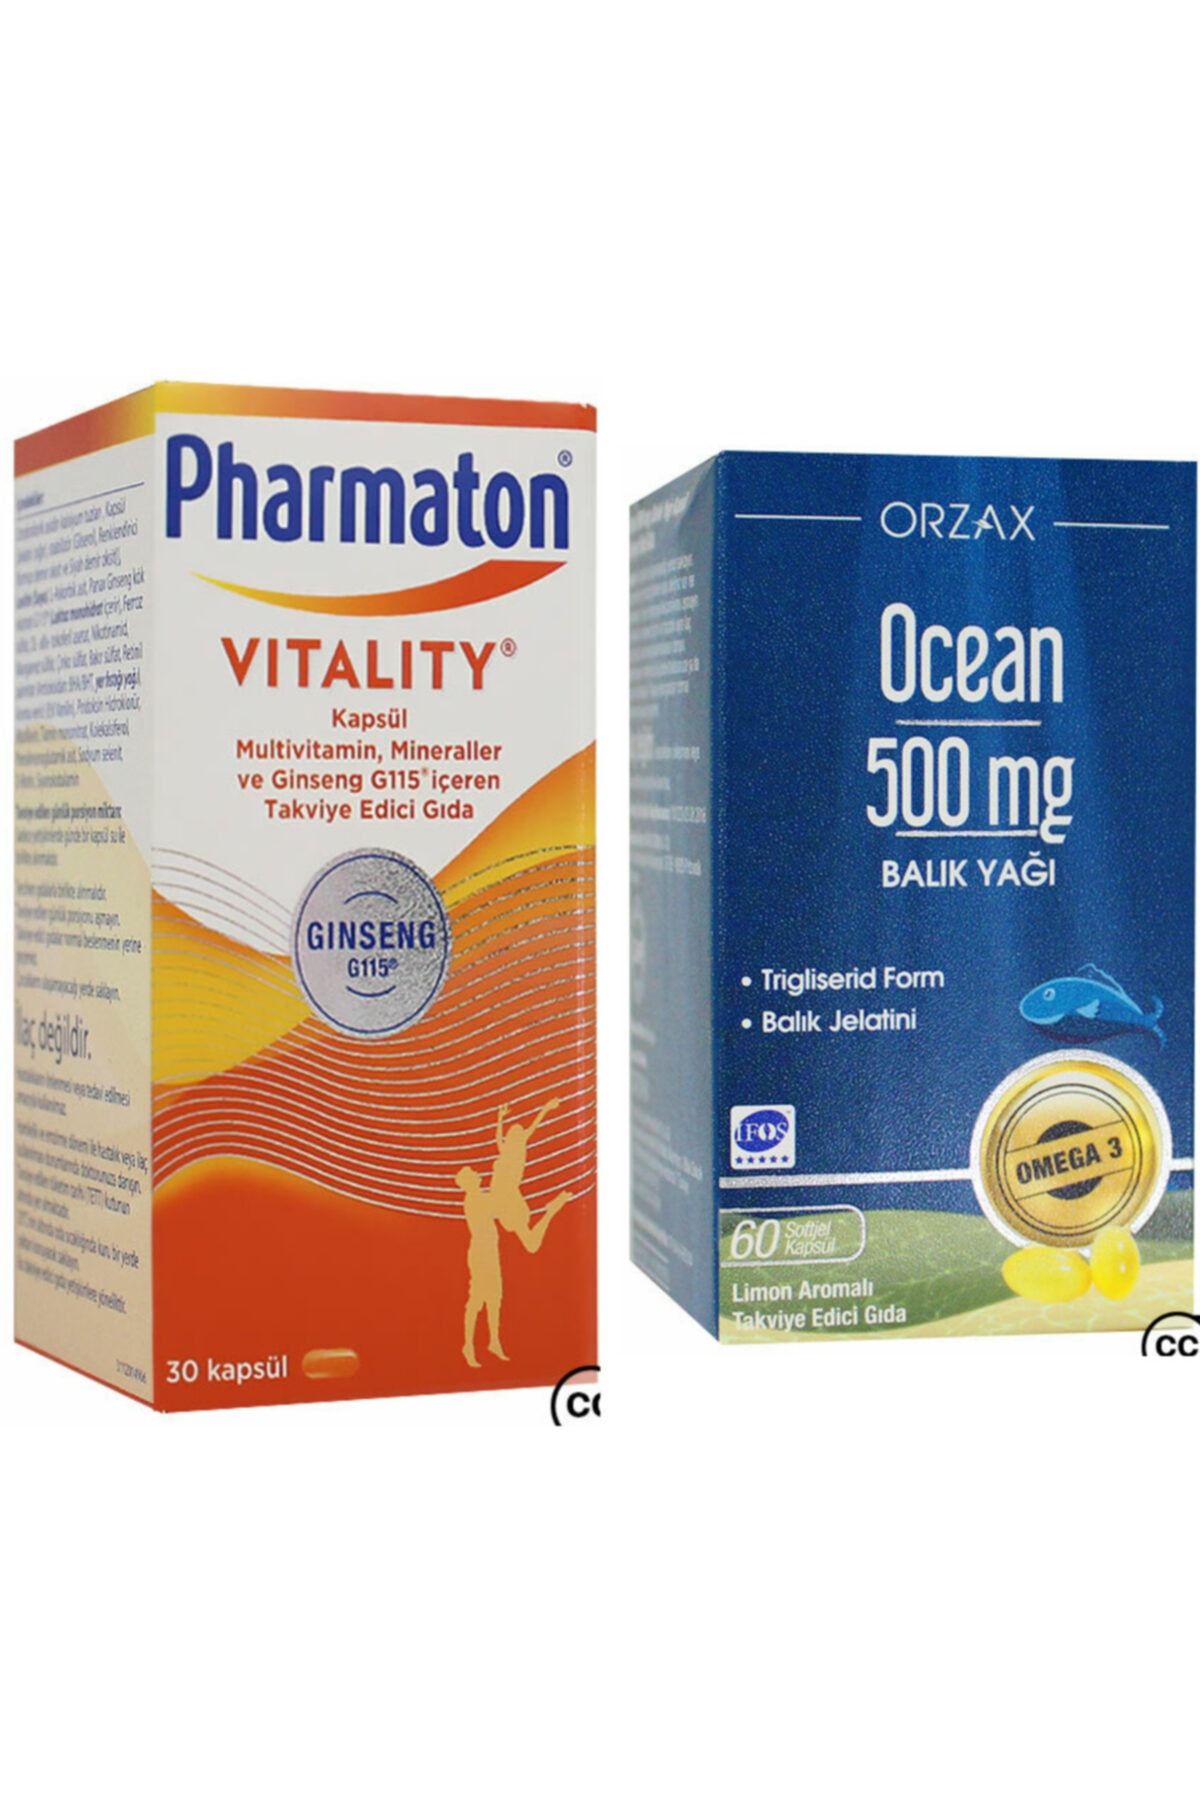 Pharmaton Vitality 30 Kapsül Ocean 500mg Balık Yağı 60 Kapsül